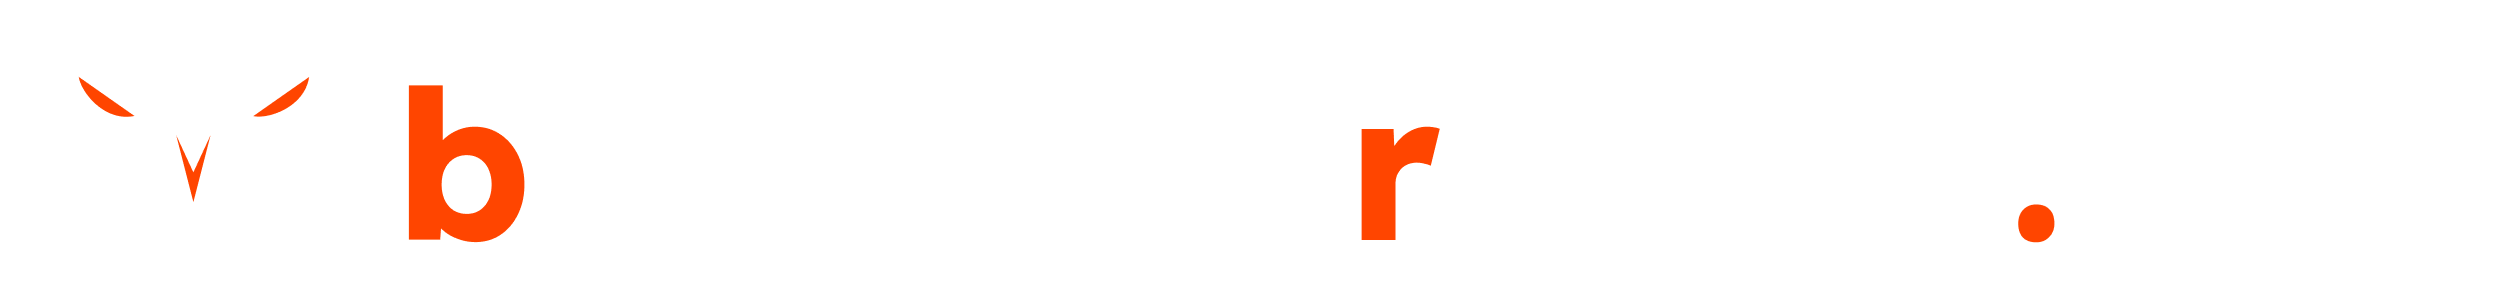 blogging raptor header logo